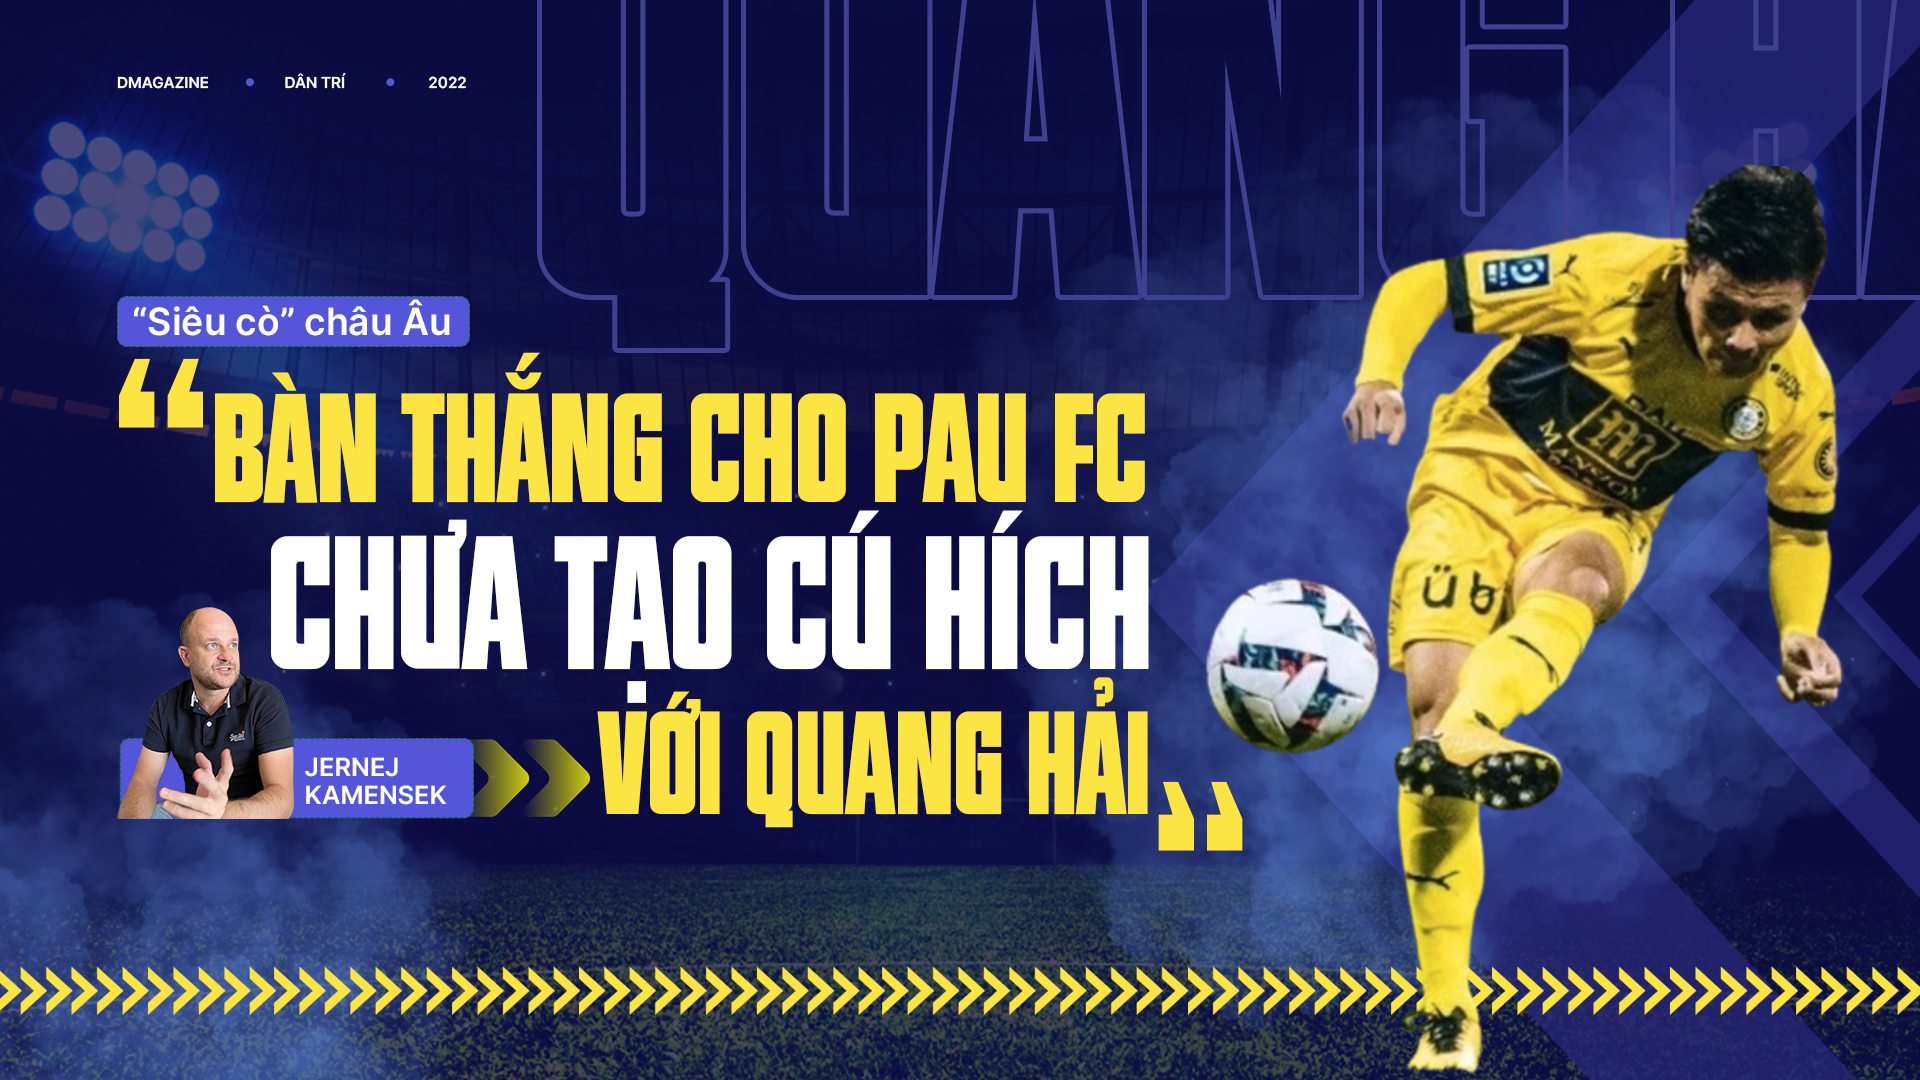 Chuyên gia Kamensek: "Bàn thắng cho Pau FC chưa tạo cú hích với Quang Hải"